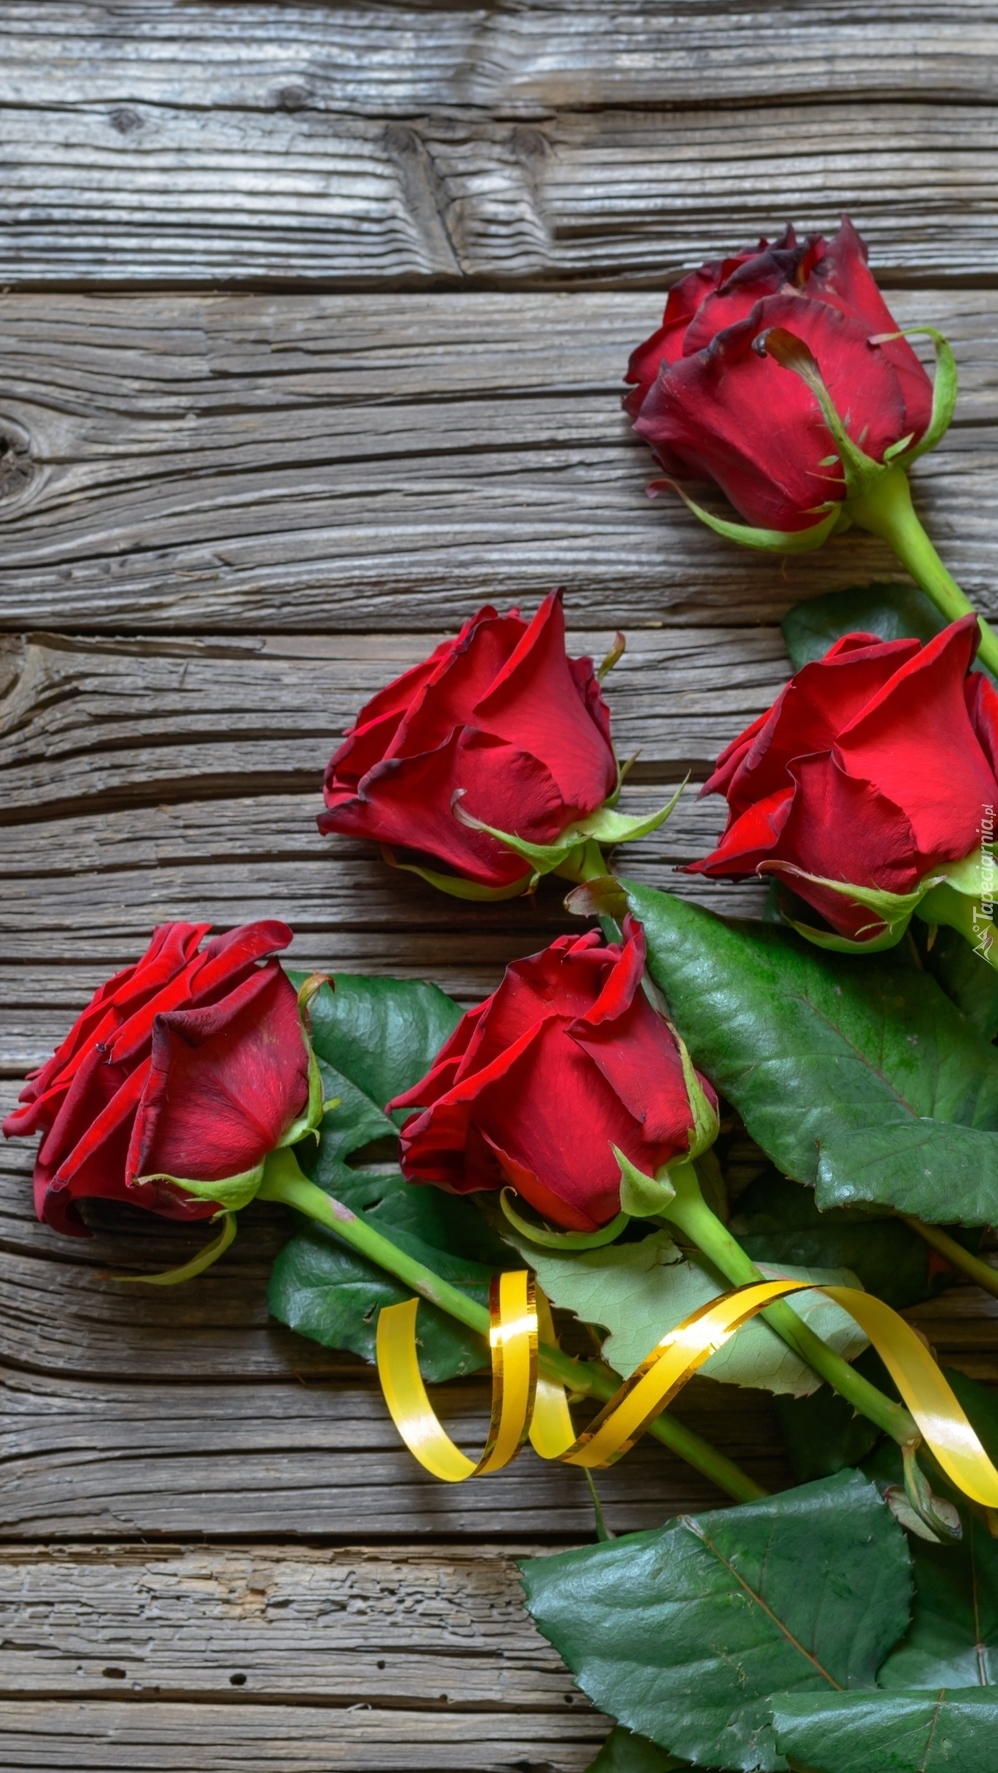 Pięć czerwonych róż z żółtą wstążką na deskach